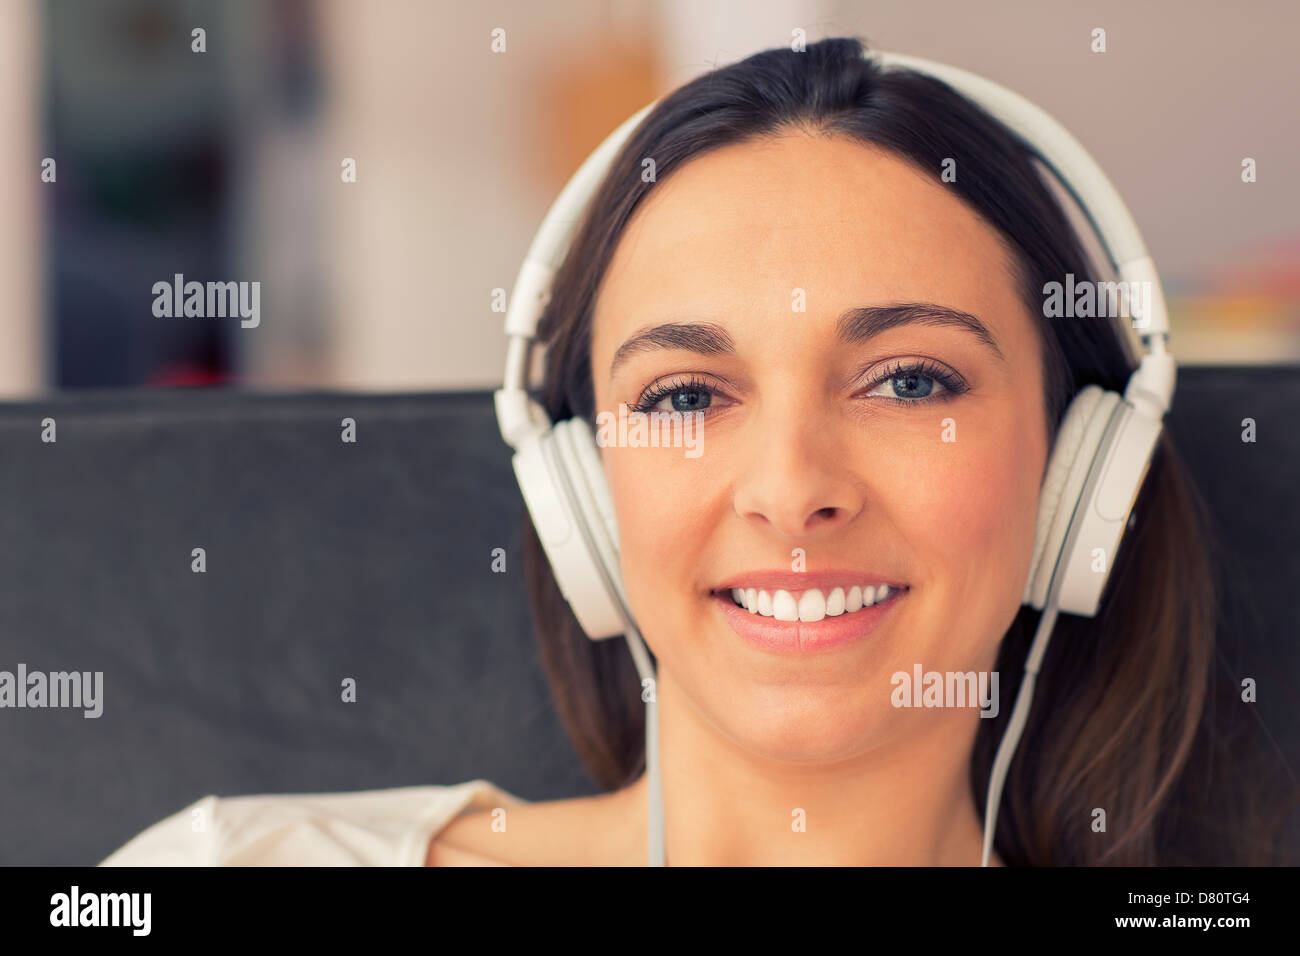 Portrait de femme simling avec son casque. elle écoute de la musique Banque D'Images